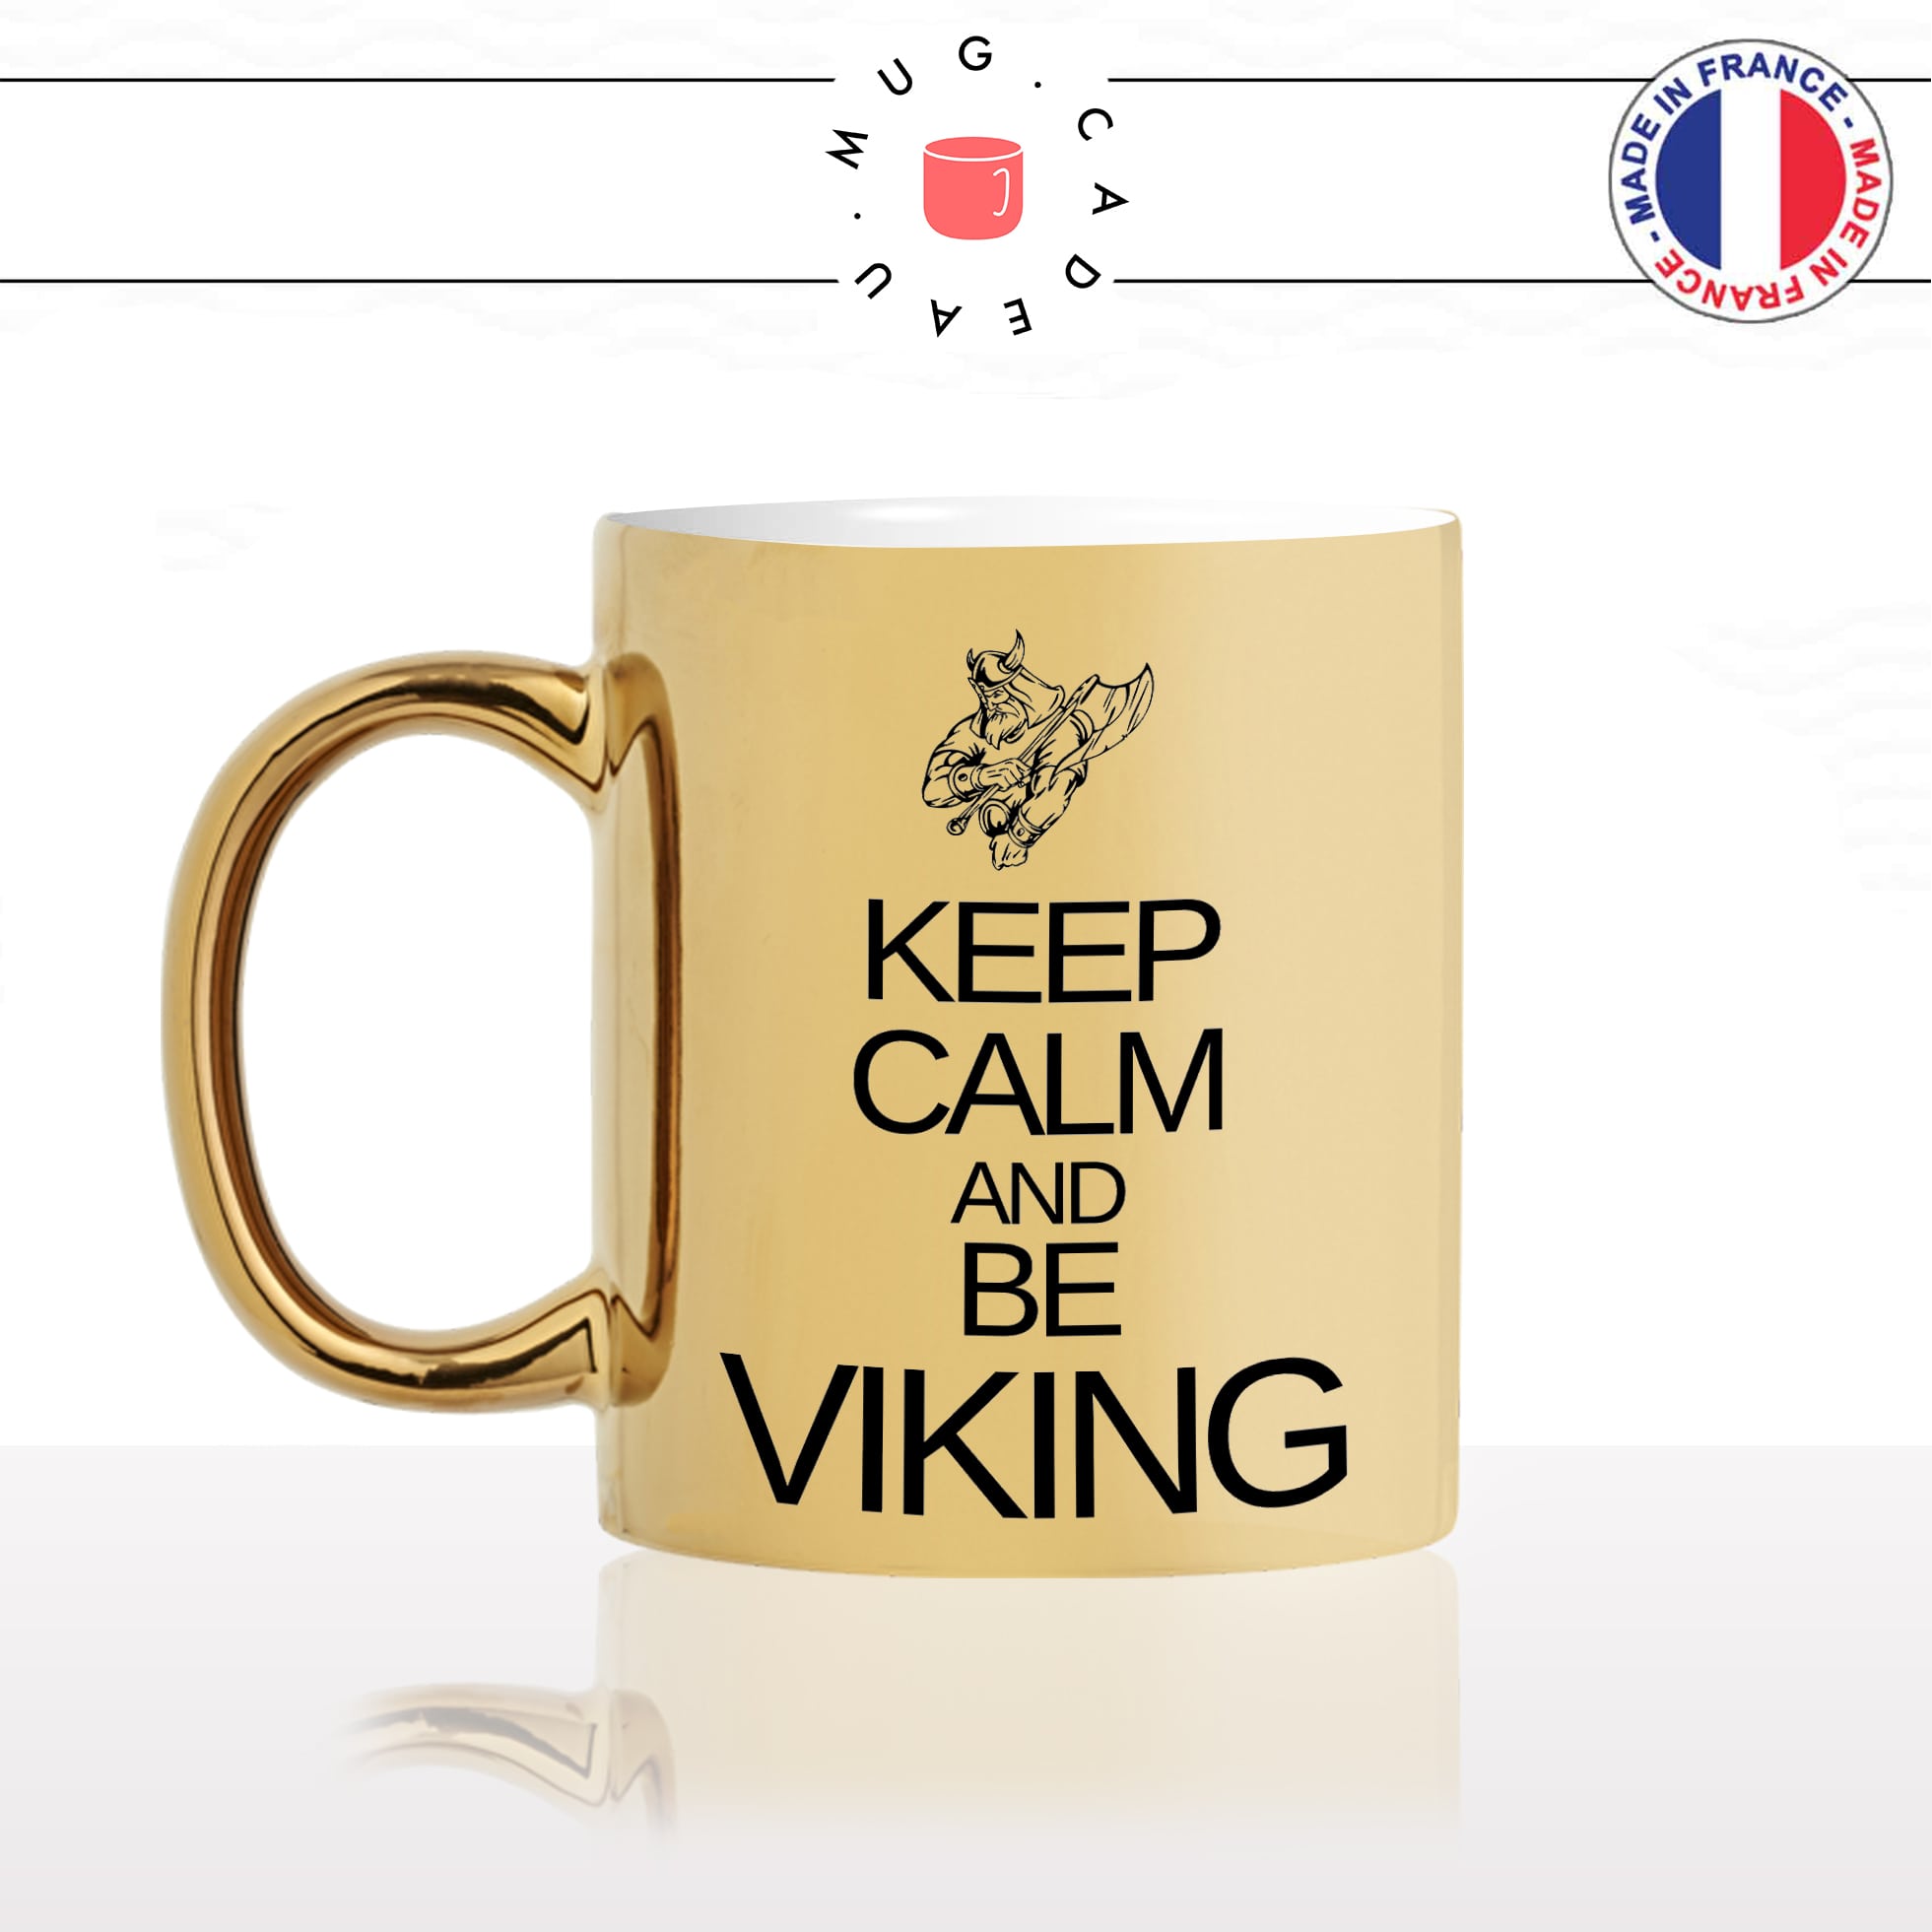 mug-tasse-gold-or-doré-keep-calm-and-be-viking-sois-normandie-normand-francais-série-france-humour-idée-cadeau-fun-café-thé-personnalisé-min